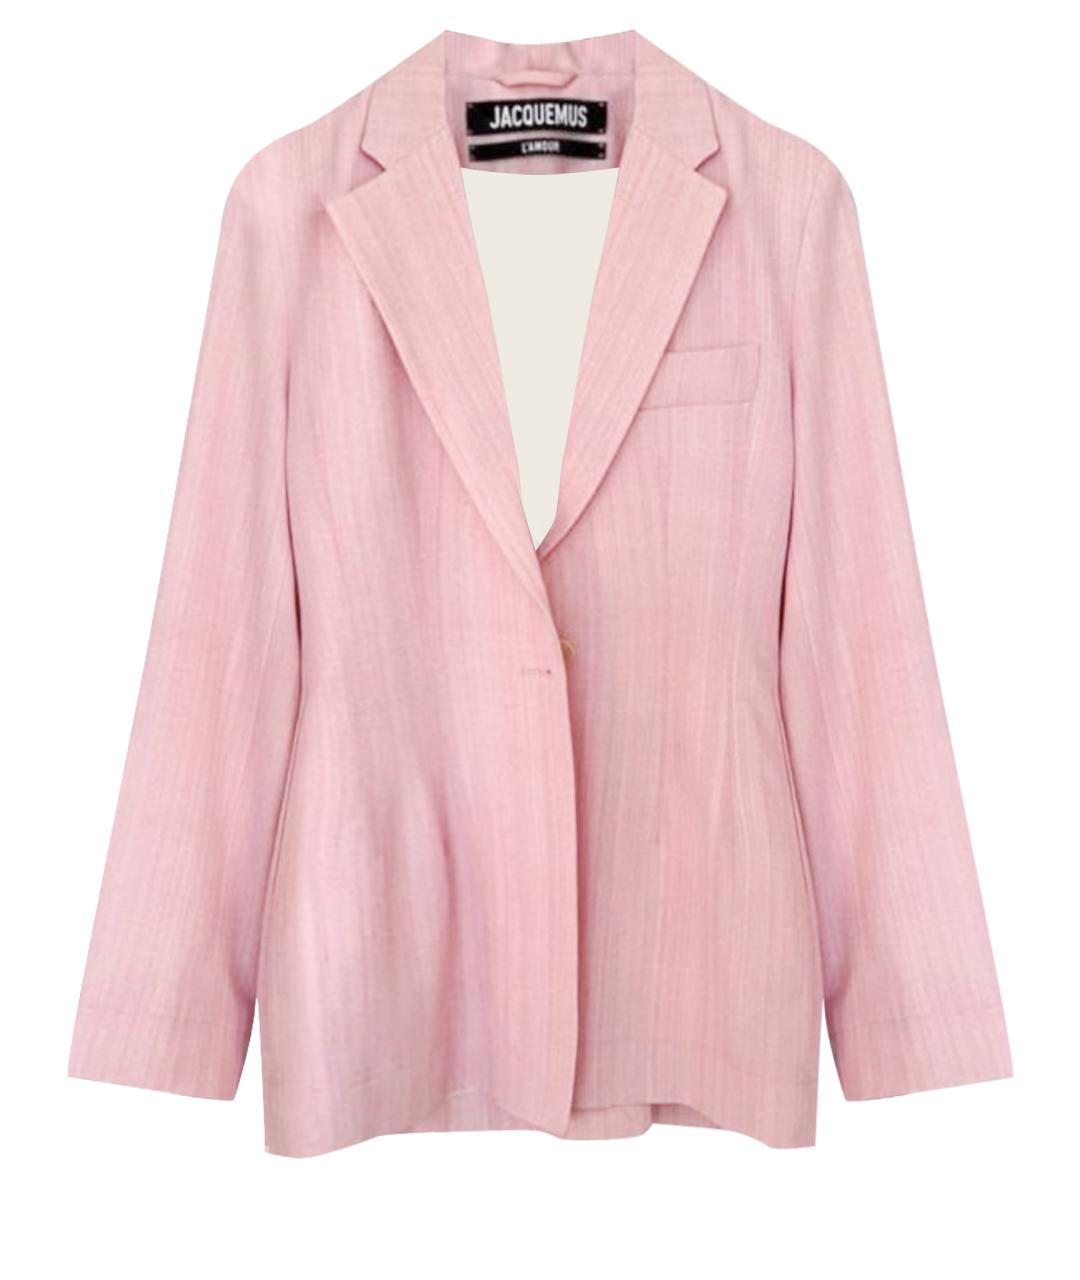 JACQUEMUS Розовый вискозный жакет/пиджак, фото 1